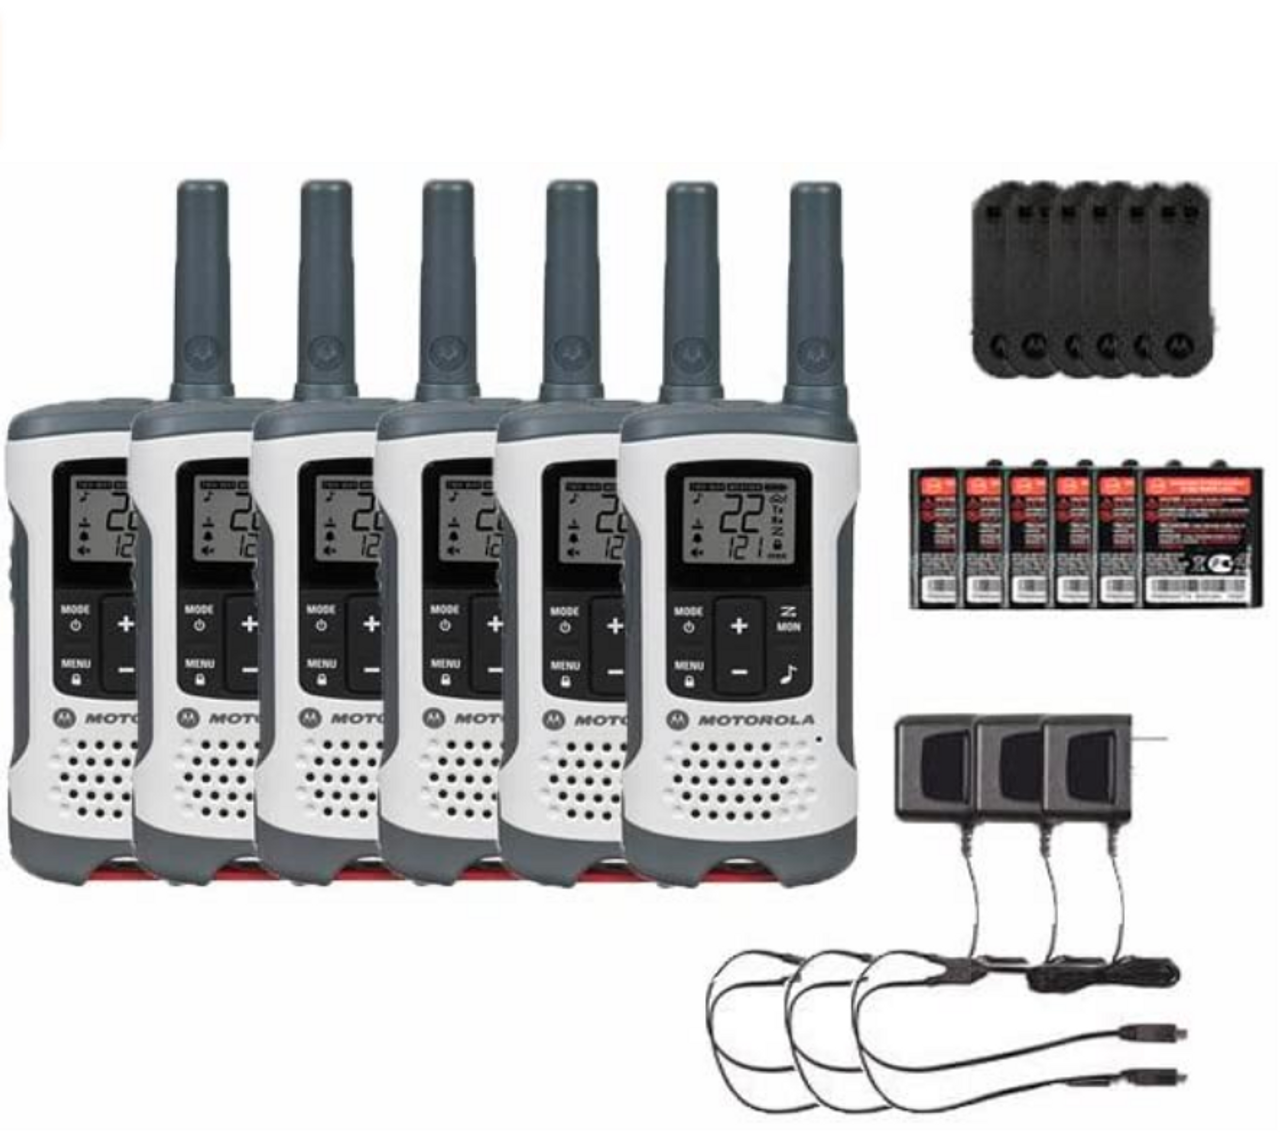 Motorola Talkabout T465 Two-Way Radios Walkie Talkies 22 Channels PTT IVOX Flashlight Pack - 2